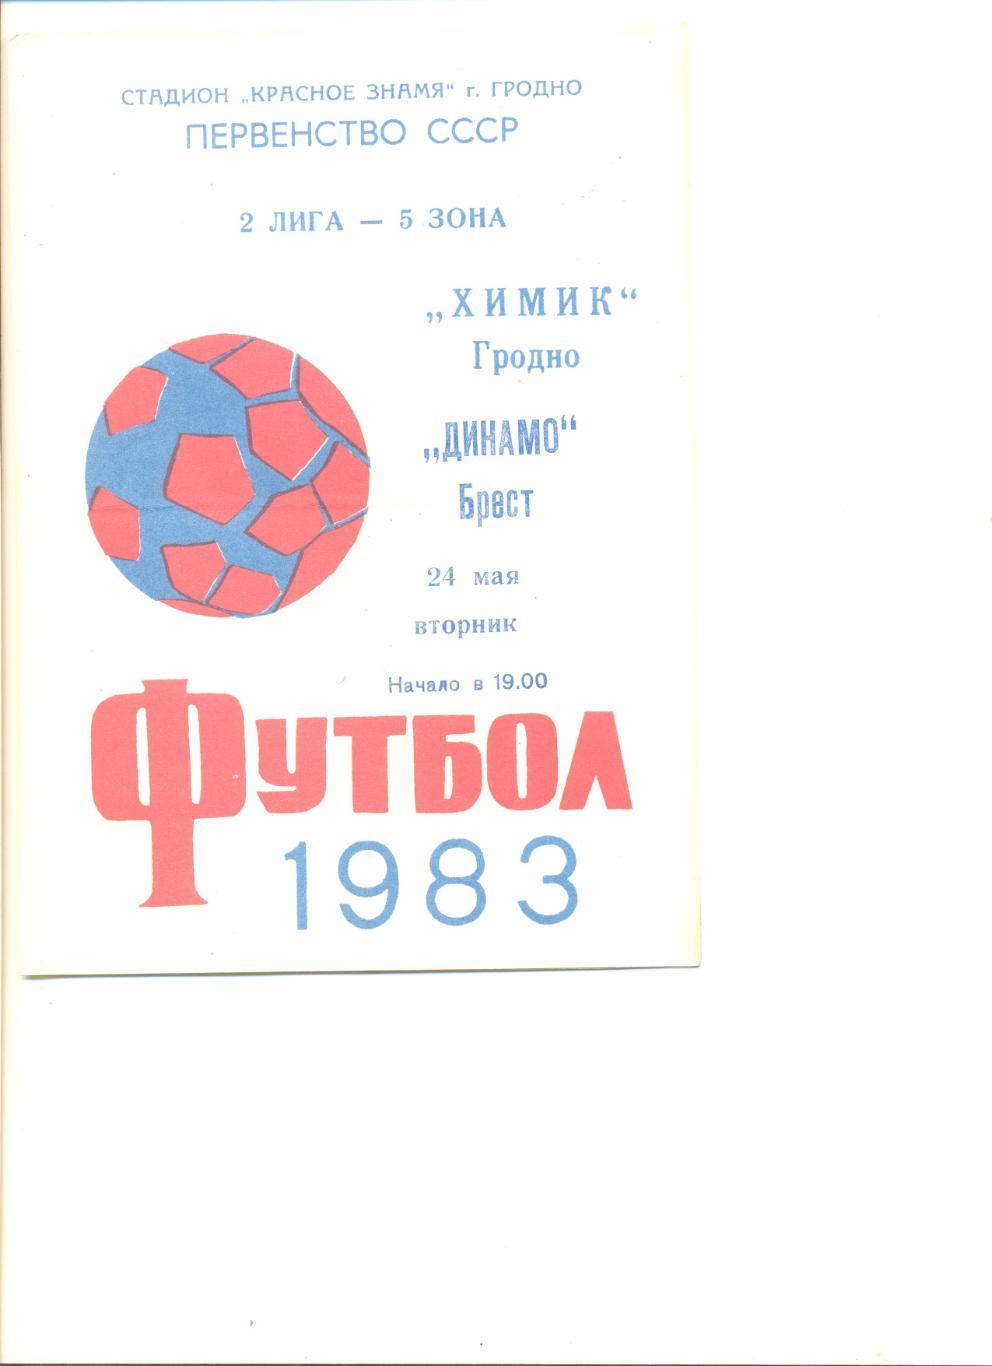 Химик Гродно - Динамо Брест 24.05.1983 г.